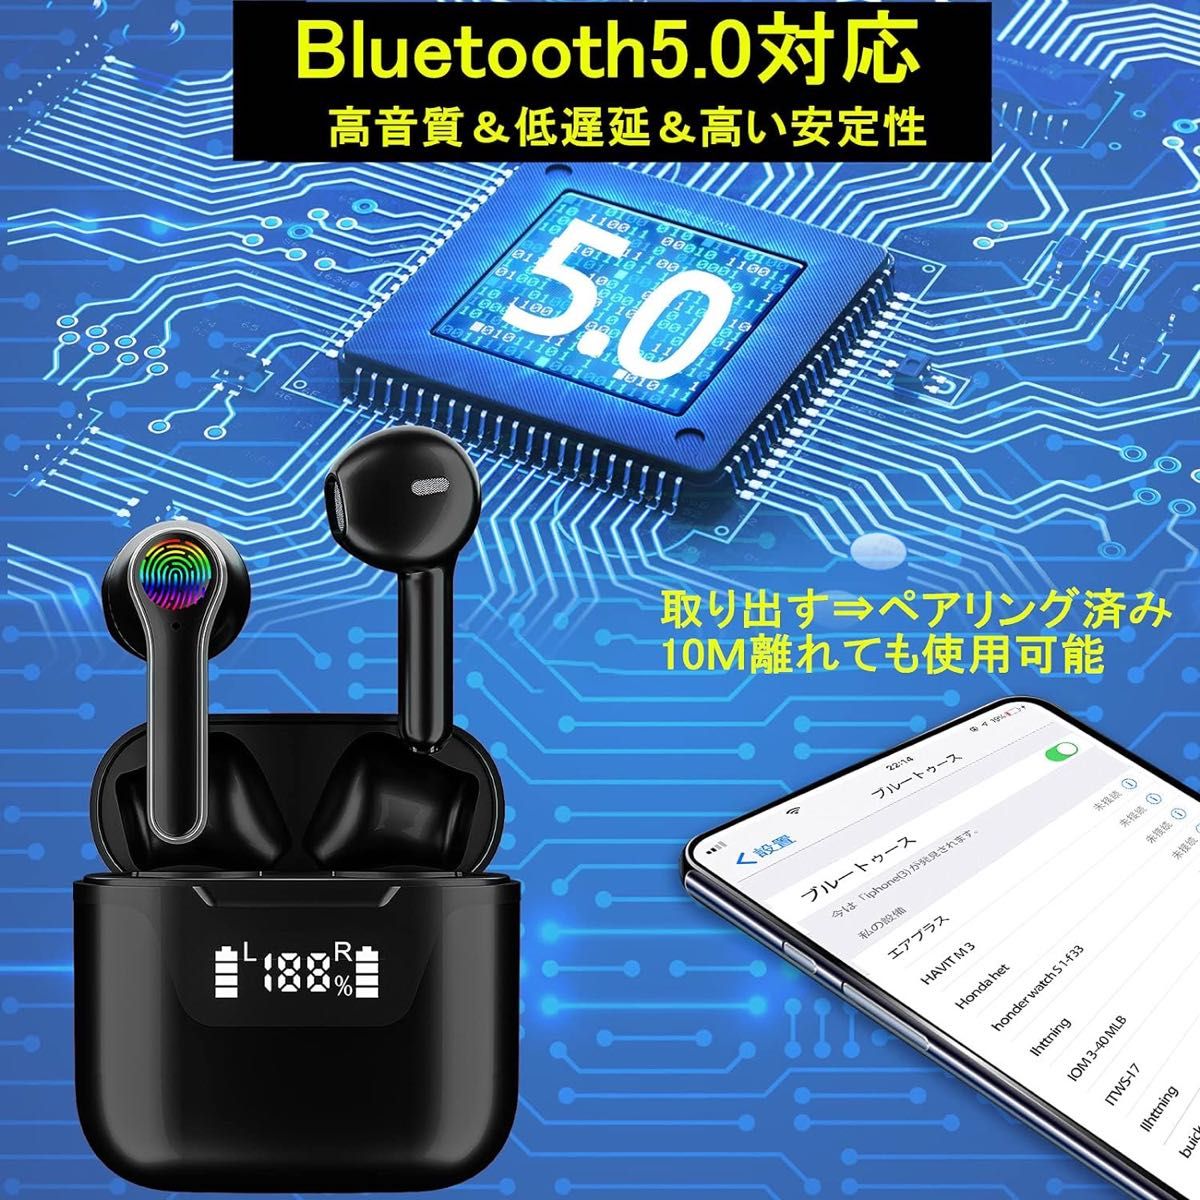 [新品]ワイヤレス イヤホン Bluetoothイヤホン 音量調整可能